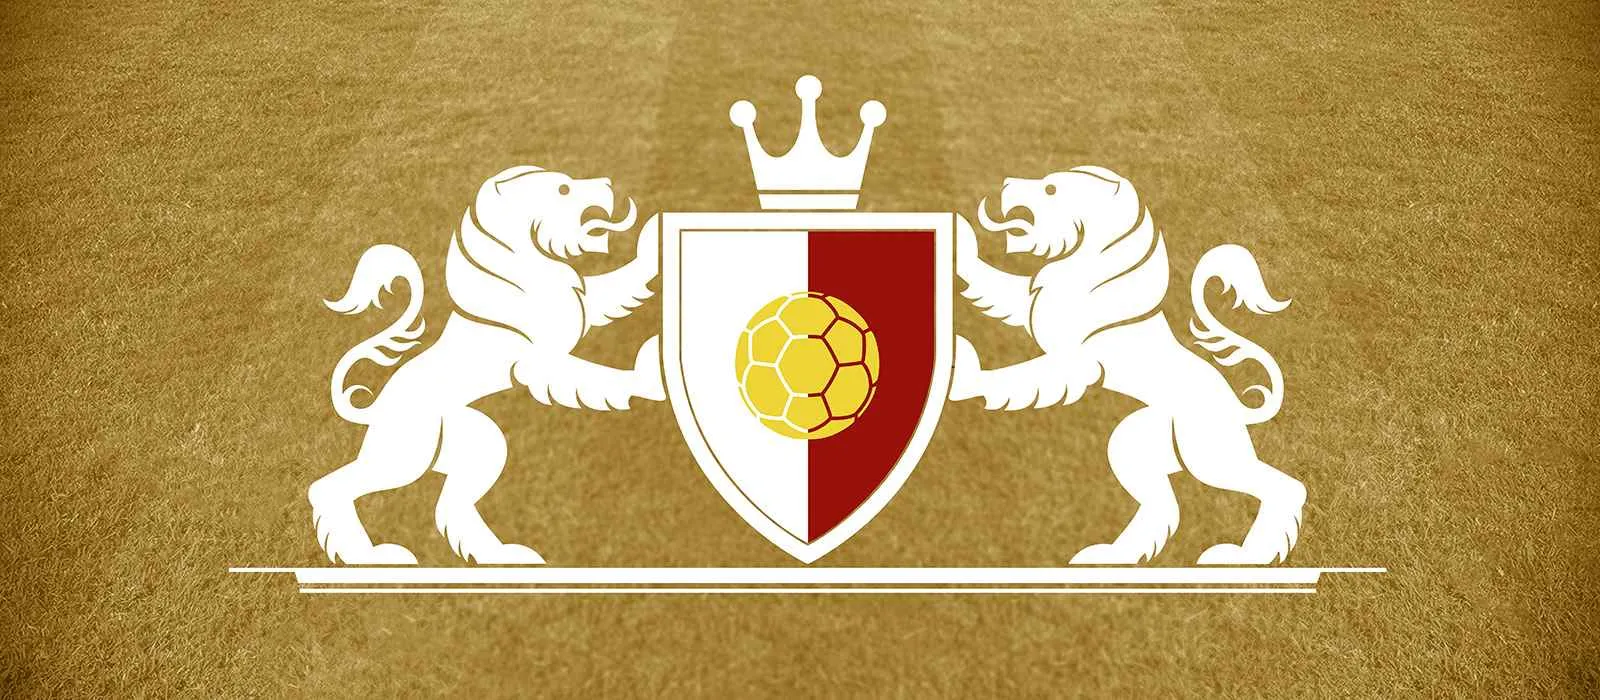 Logga med färger som representerar Premier League-fotbollslaget Brentford